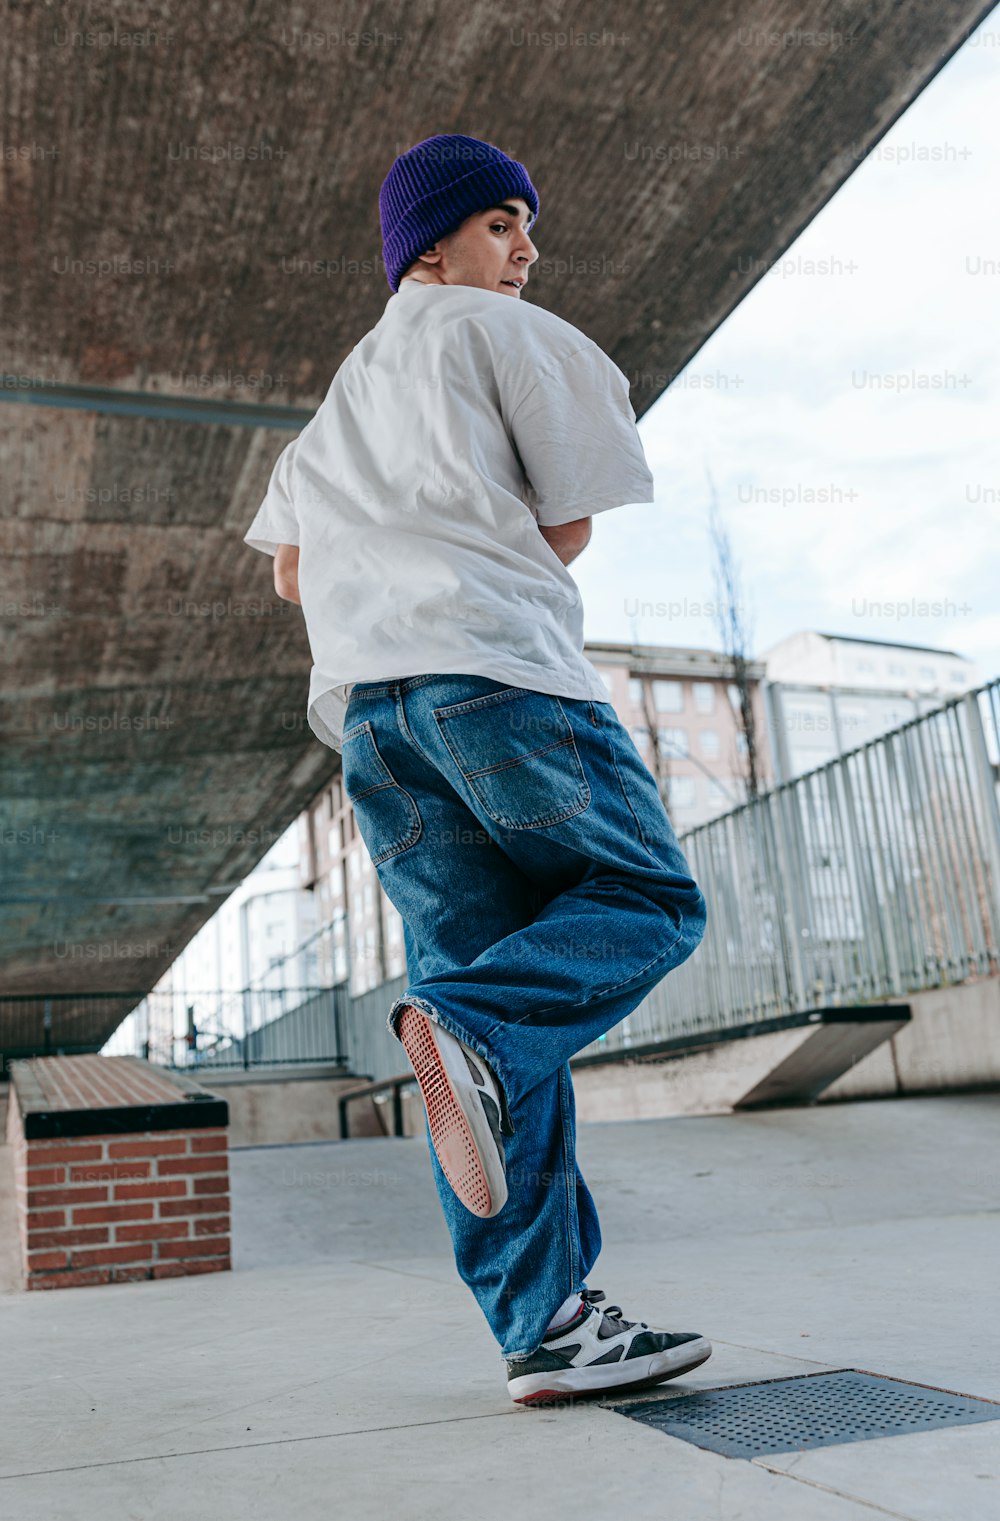 Ein junger Mann fährt auf einem Skateboard unter einer Brücke hindurch